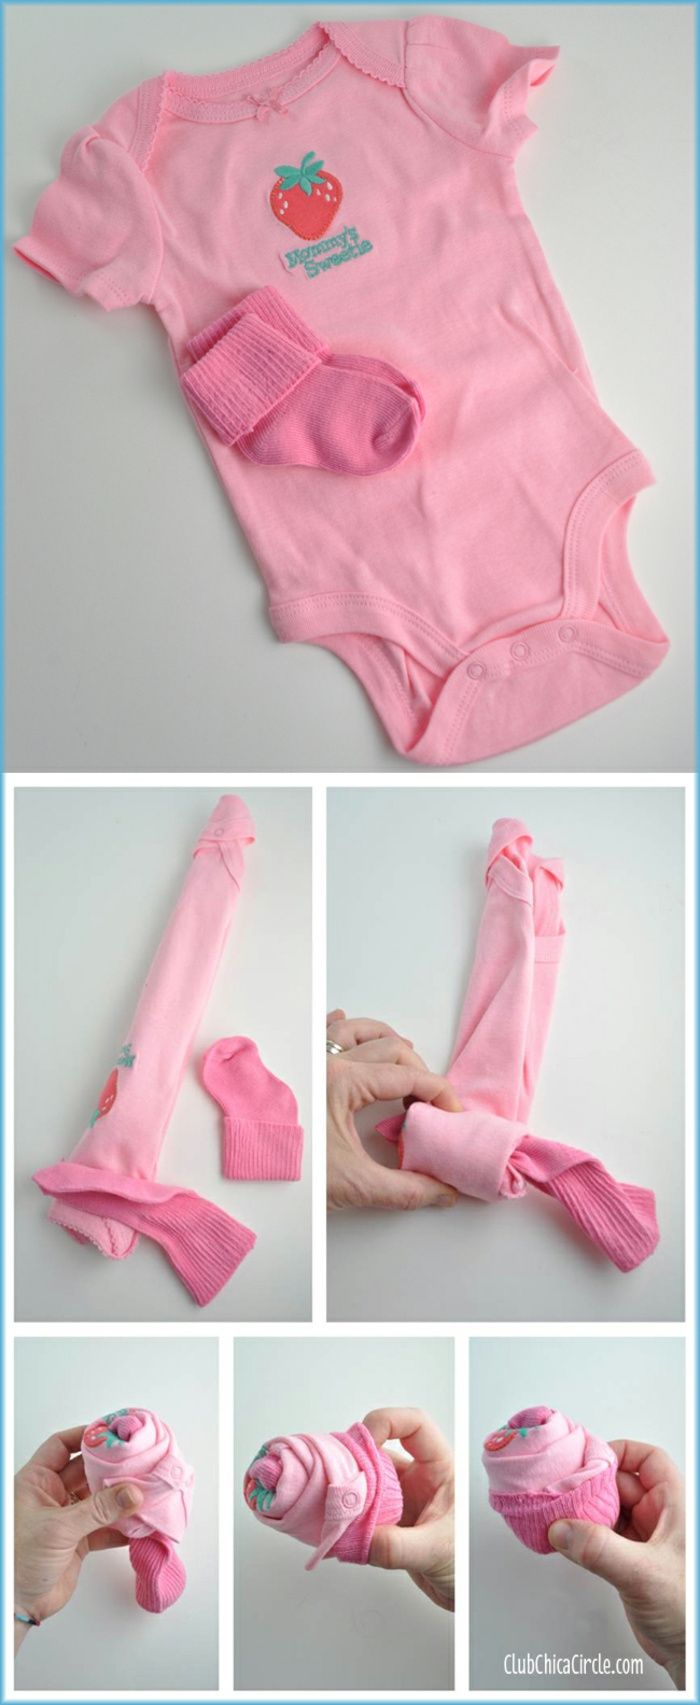 Kreative Idee für Babygeschenk, rosafarbene Body und Babysöckchen in Form von Cupcake 